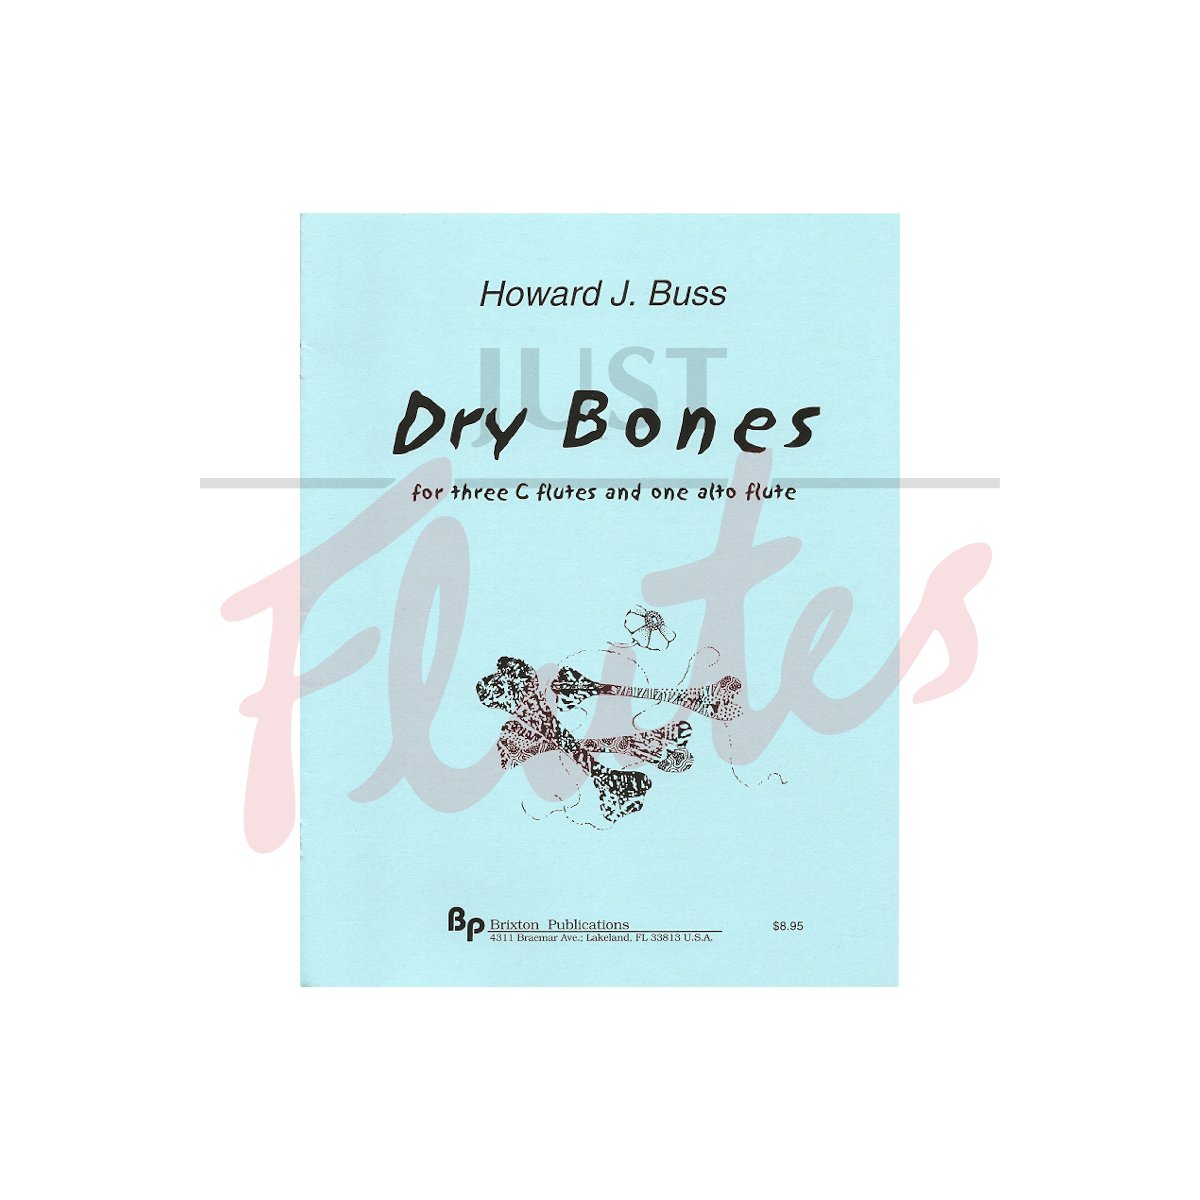 Dry Bones [4 Flutes]